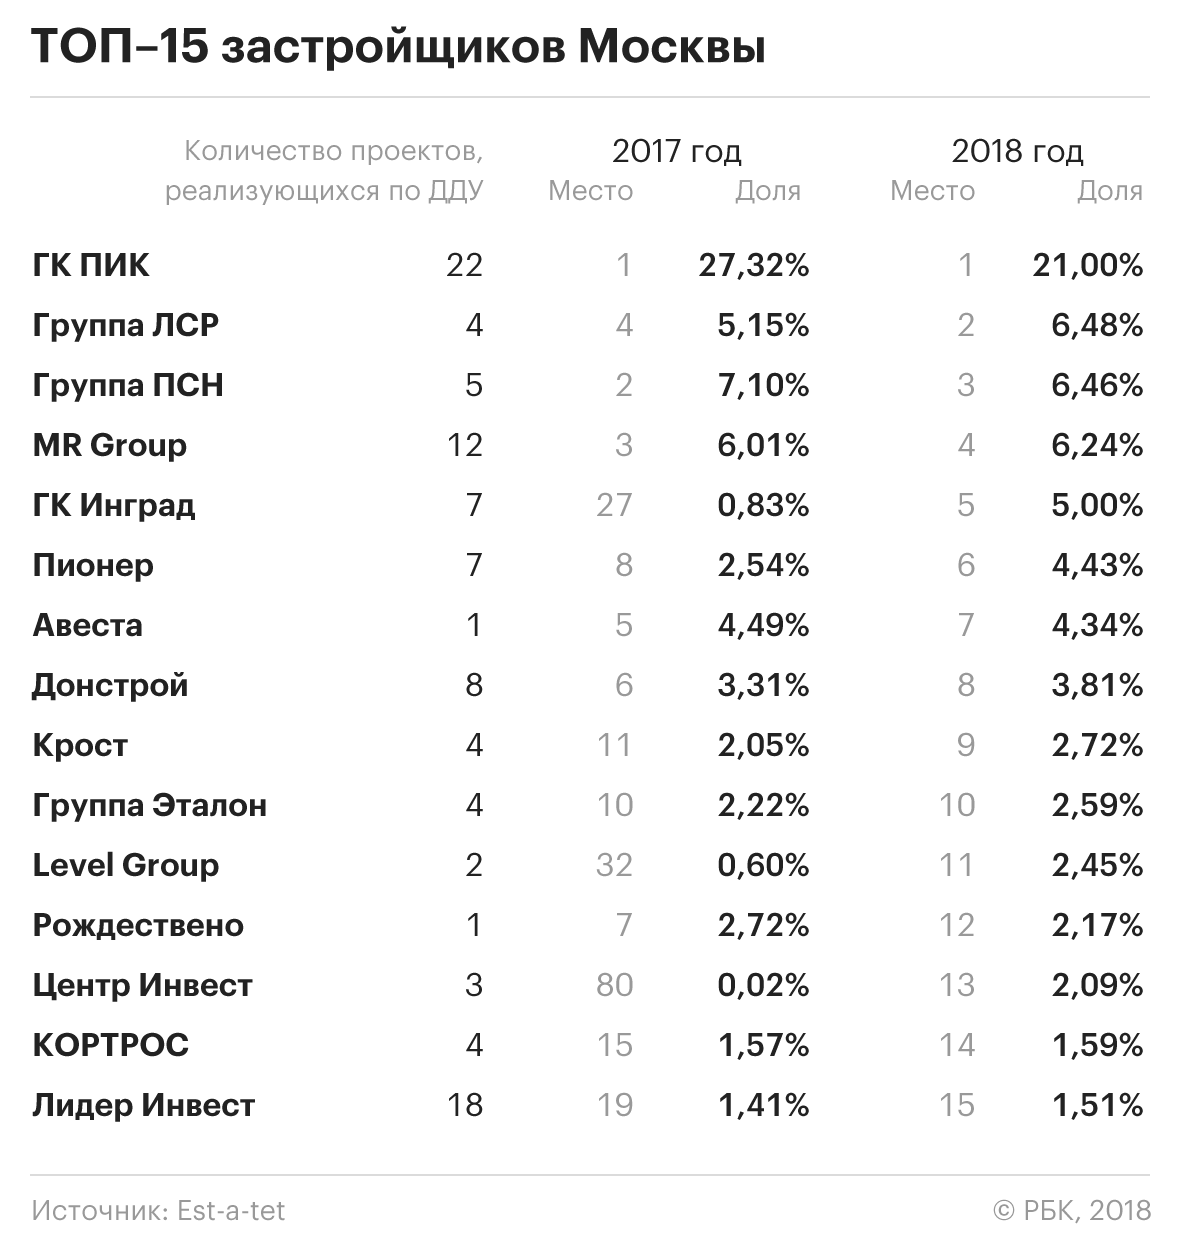 Московские компании рейтинг